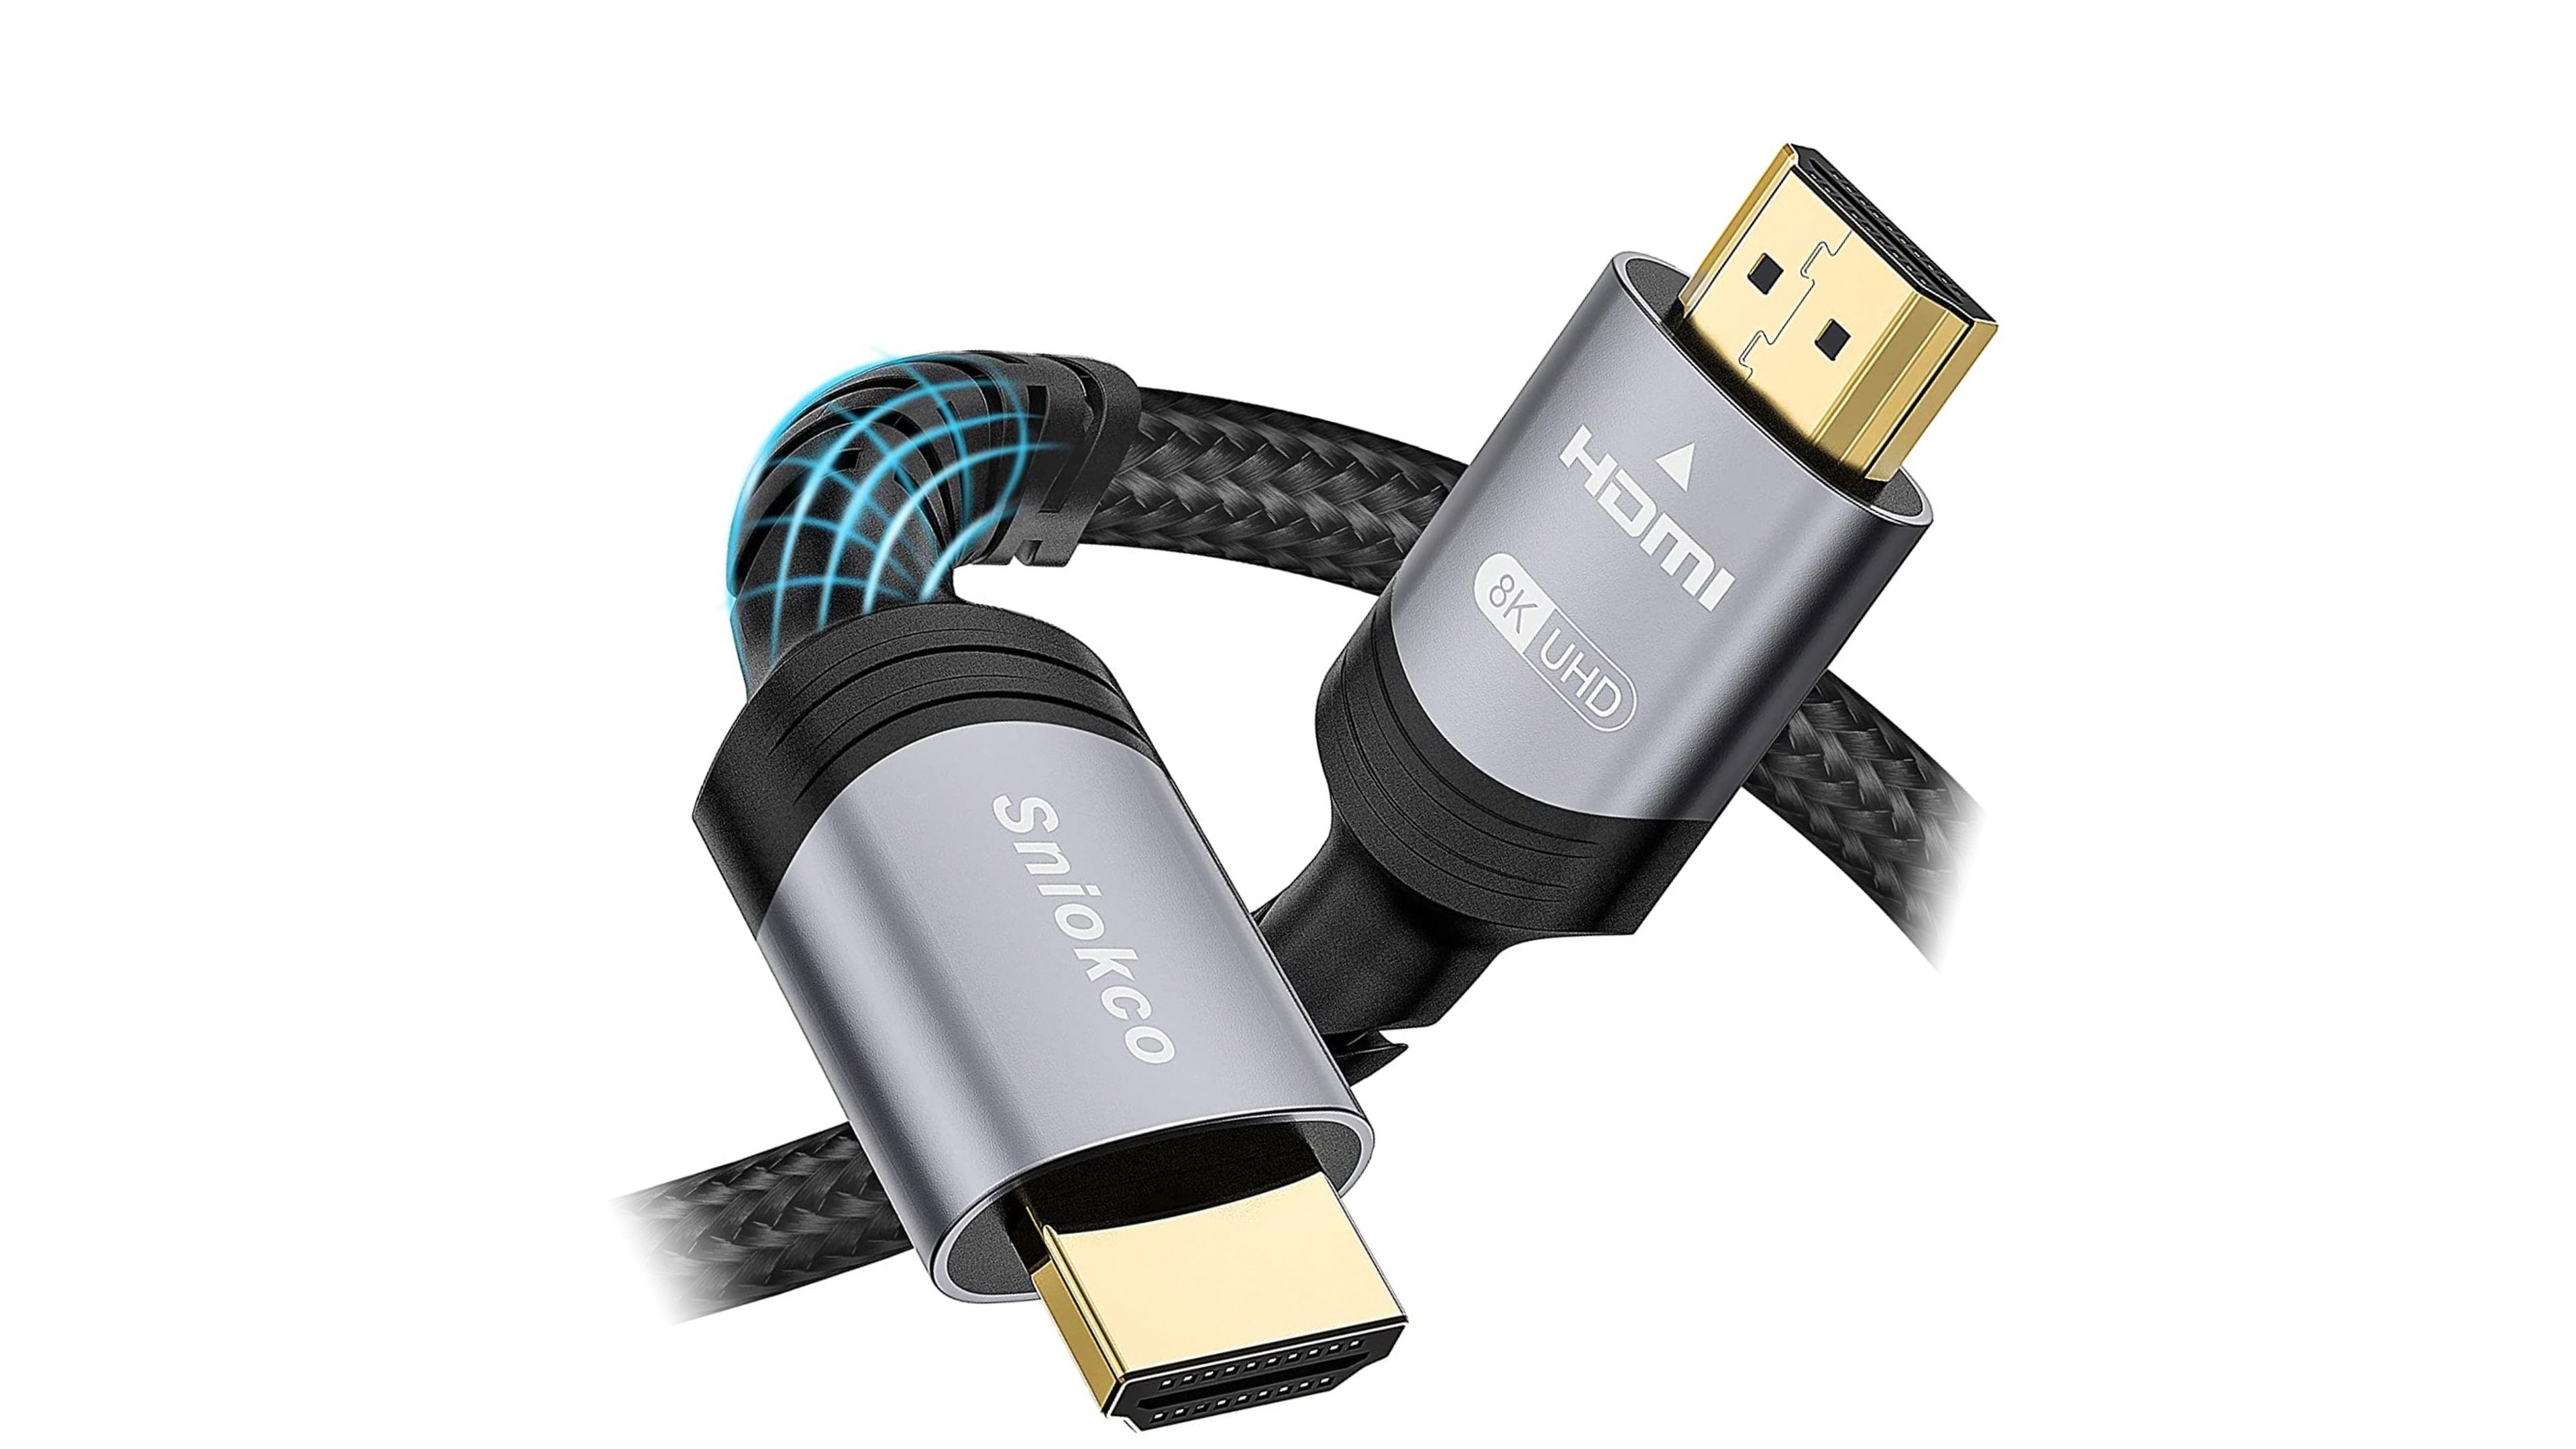 Cable HDMI 2.1 Sniokco